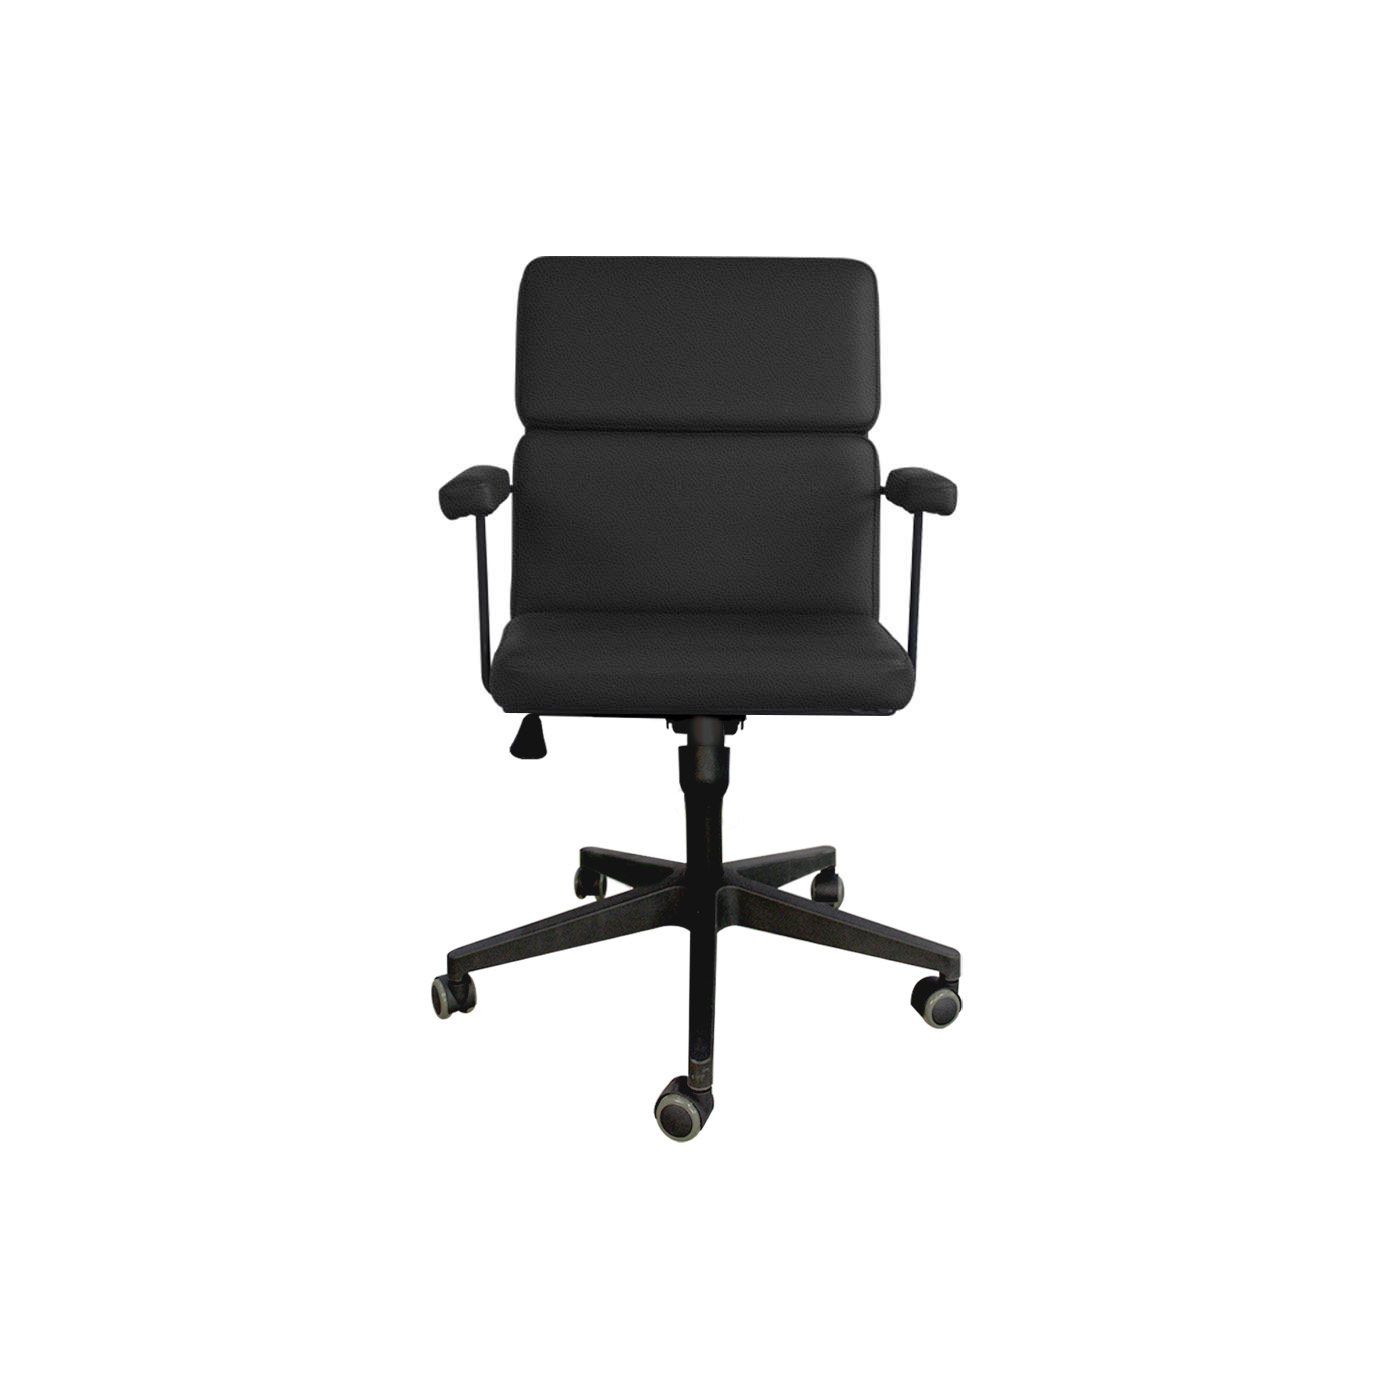 Dessau Textured Black Work Chair